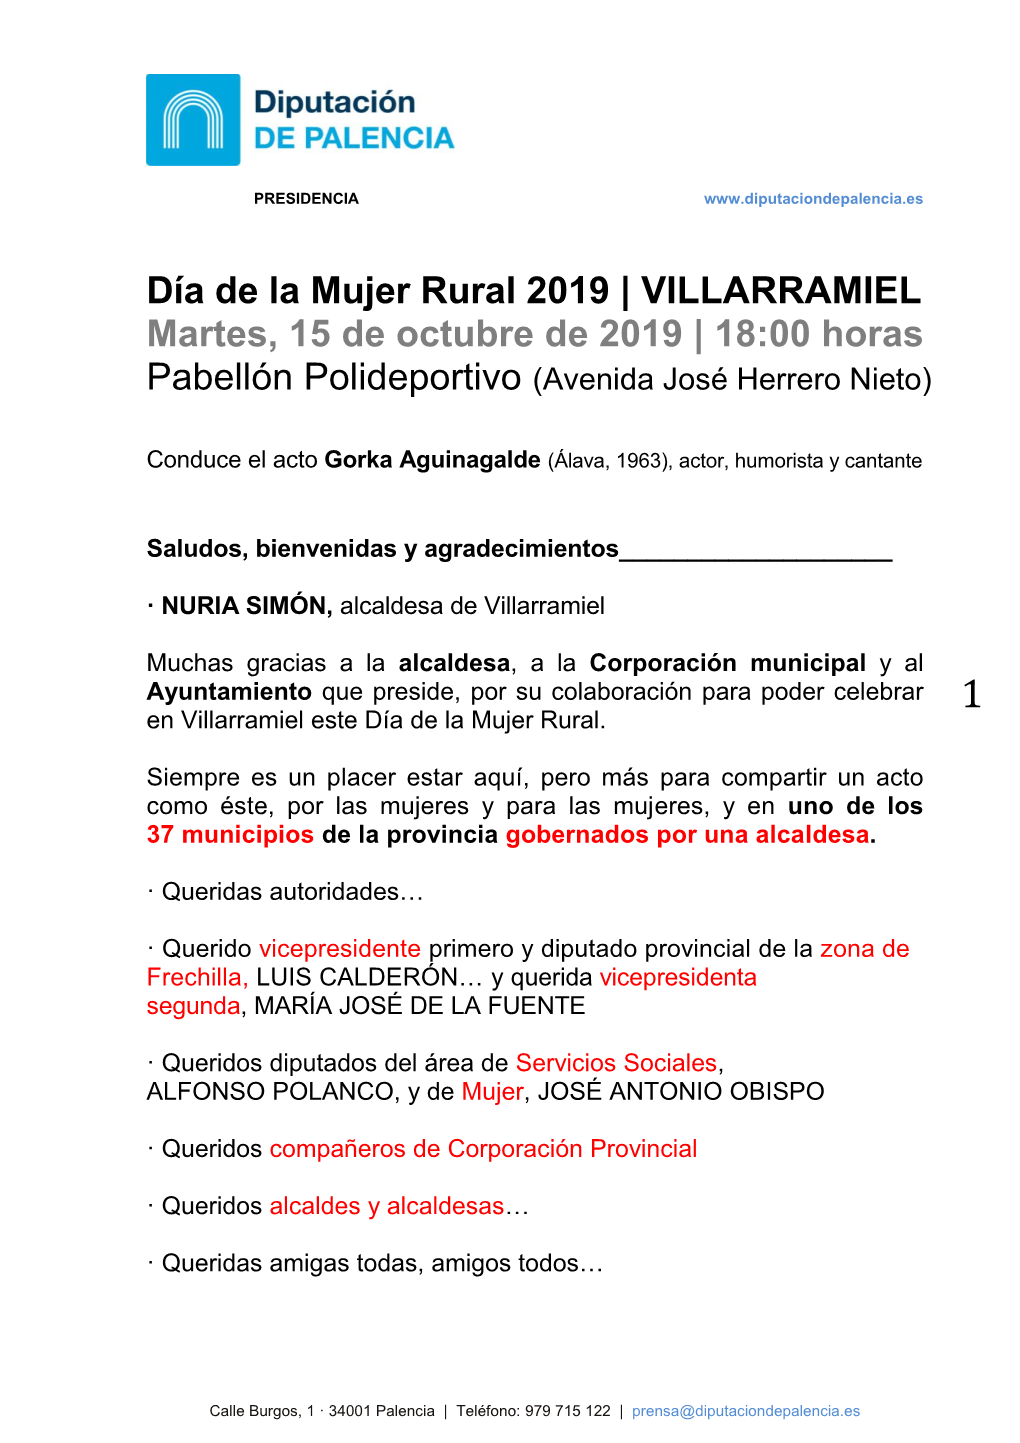 Día De La Mujer Rural 2019 | VILLARRAMIEL Martes, 15 De Octubre De 2019 | 18:00 Horas Pabellón Polideportivo (Avenida José Herrero Nieto)